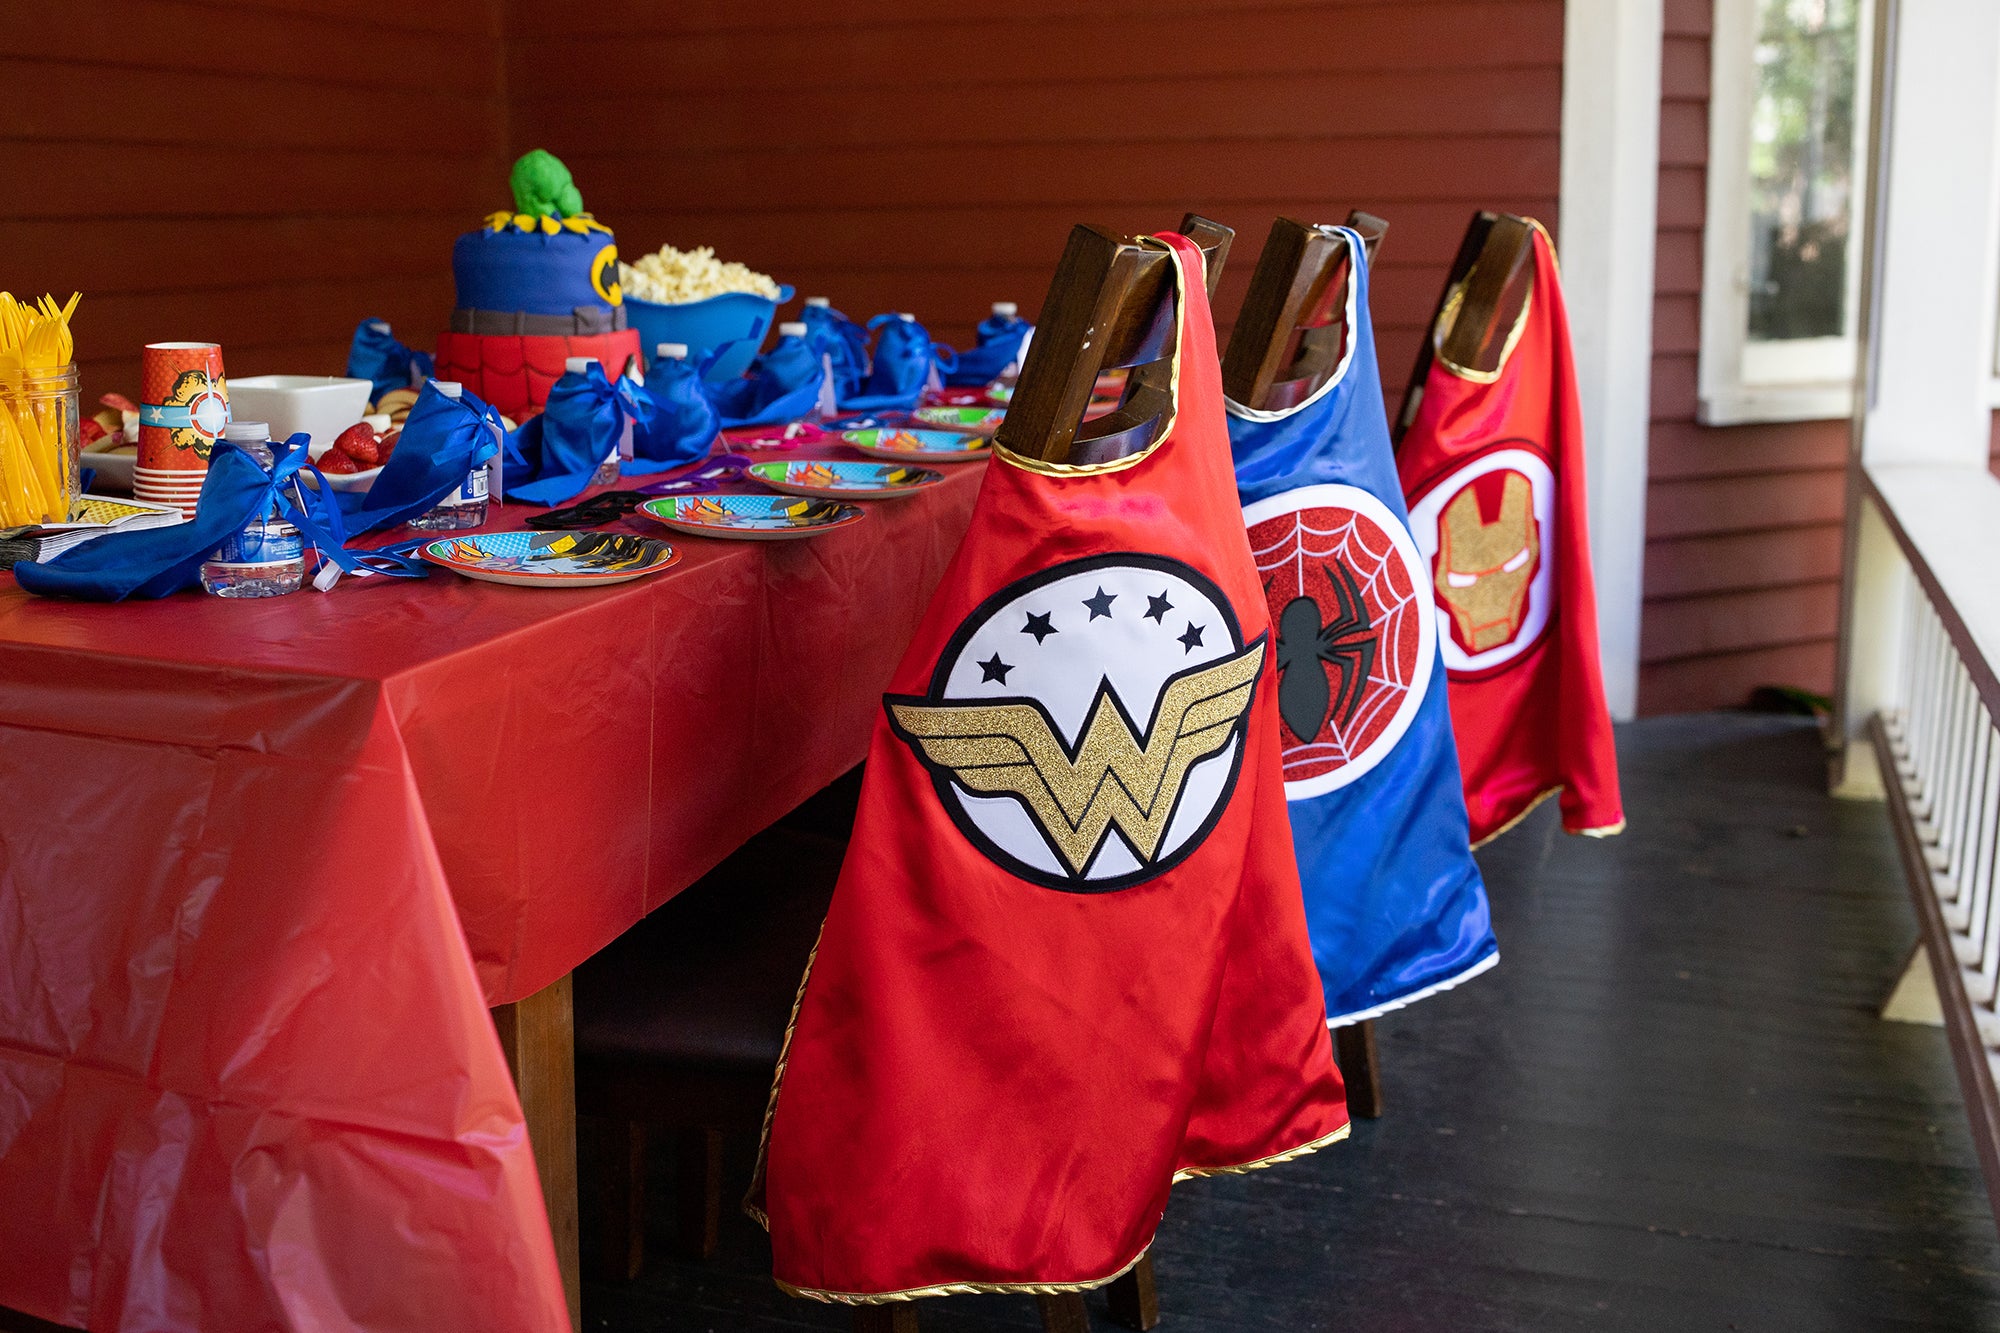 Superheroes pinata inspired superheroes party supplies superheroes party  super birthday pinatas superheroes birthday spiderman